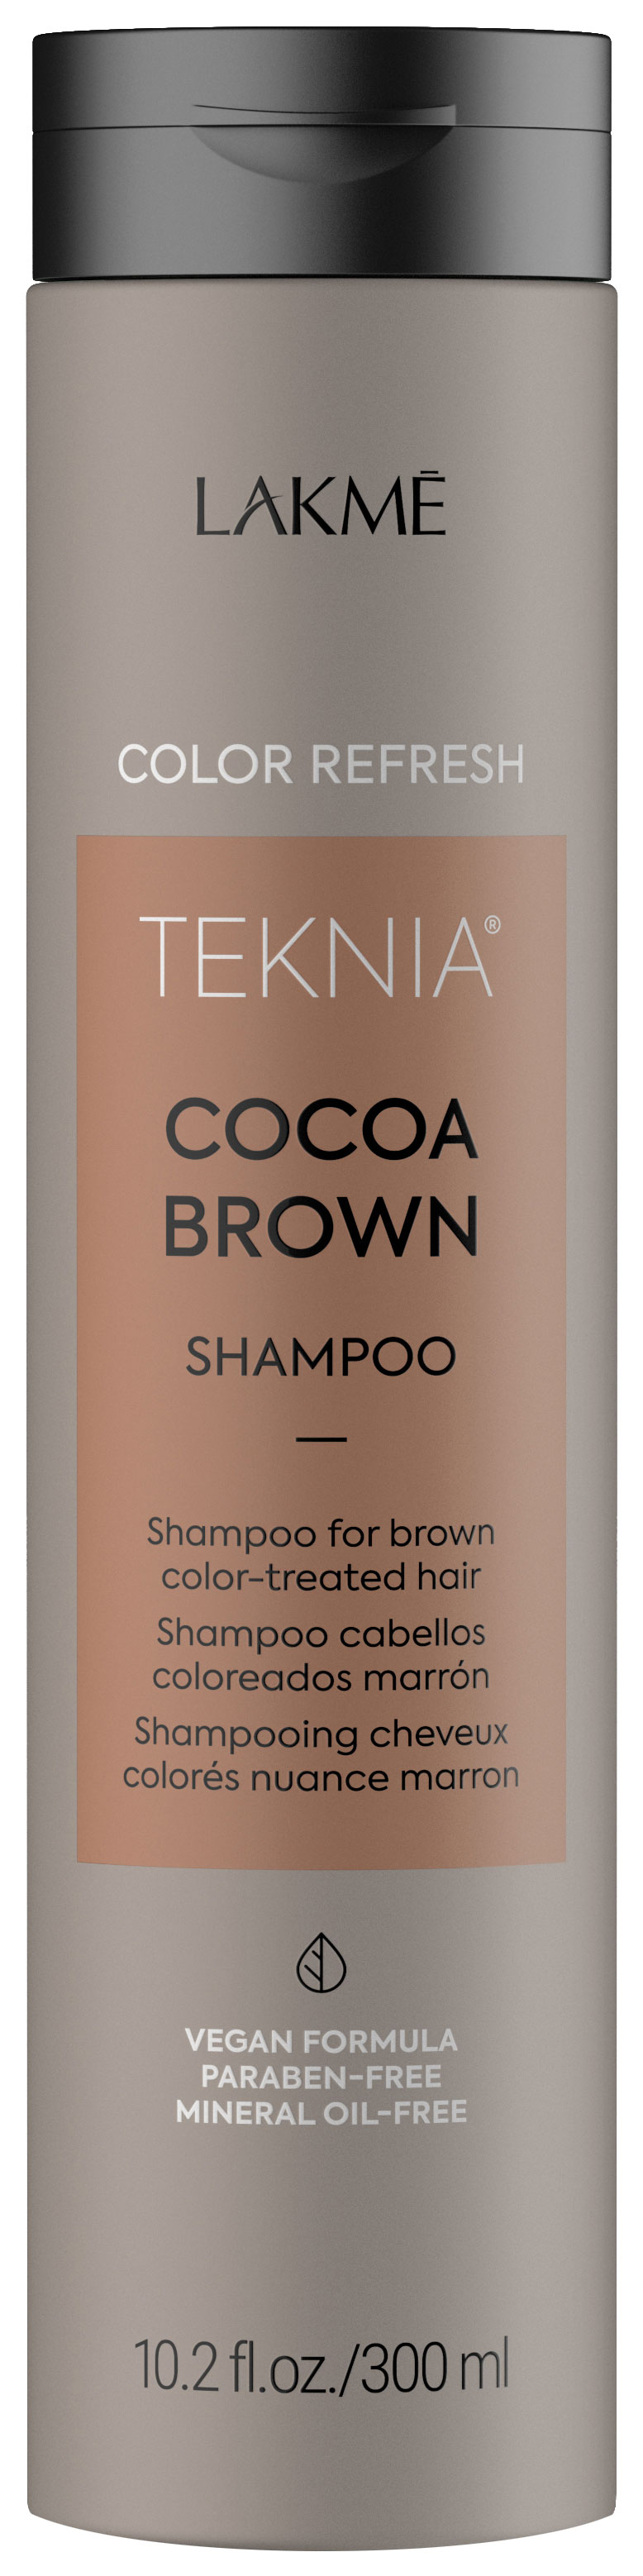 Шампунь для волос Lakme Cocoa Brown, 300 мл крем жемчуг unilever дневной для лица для зрелой кожи spf30 48мл